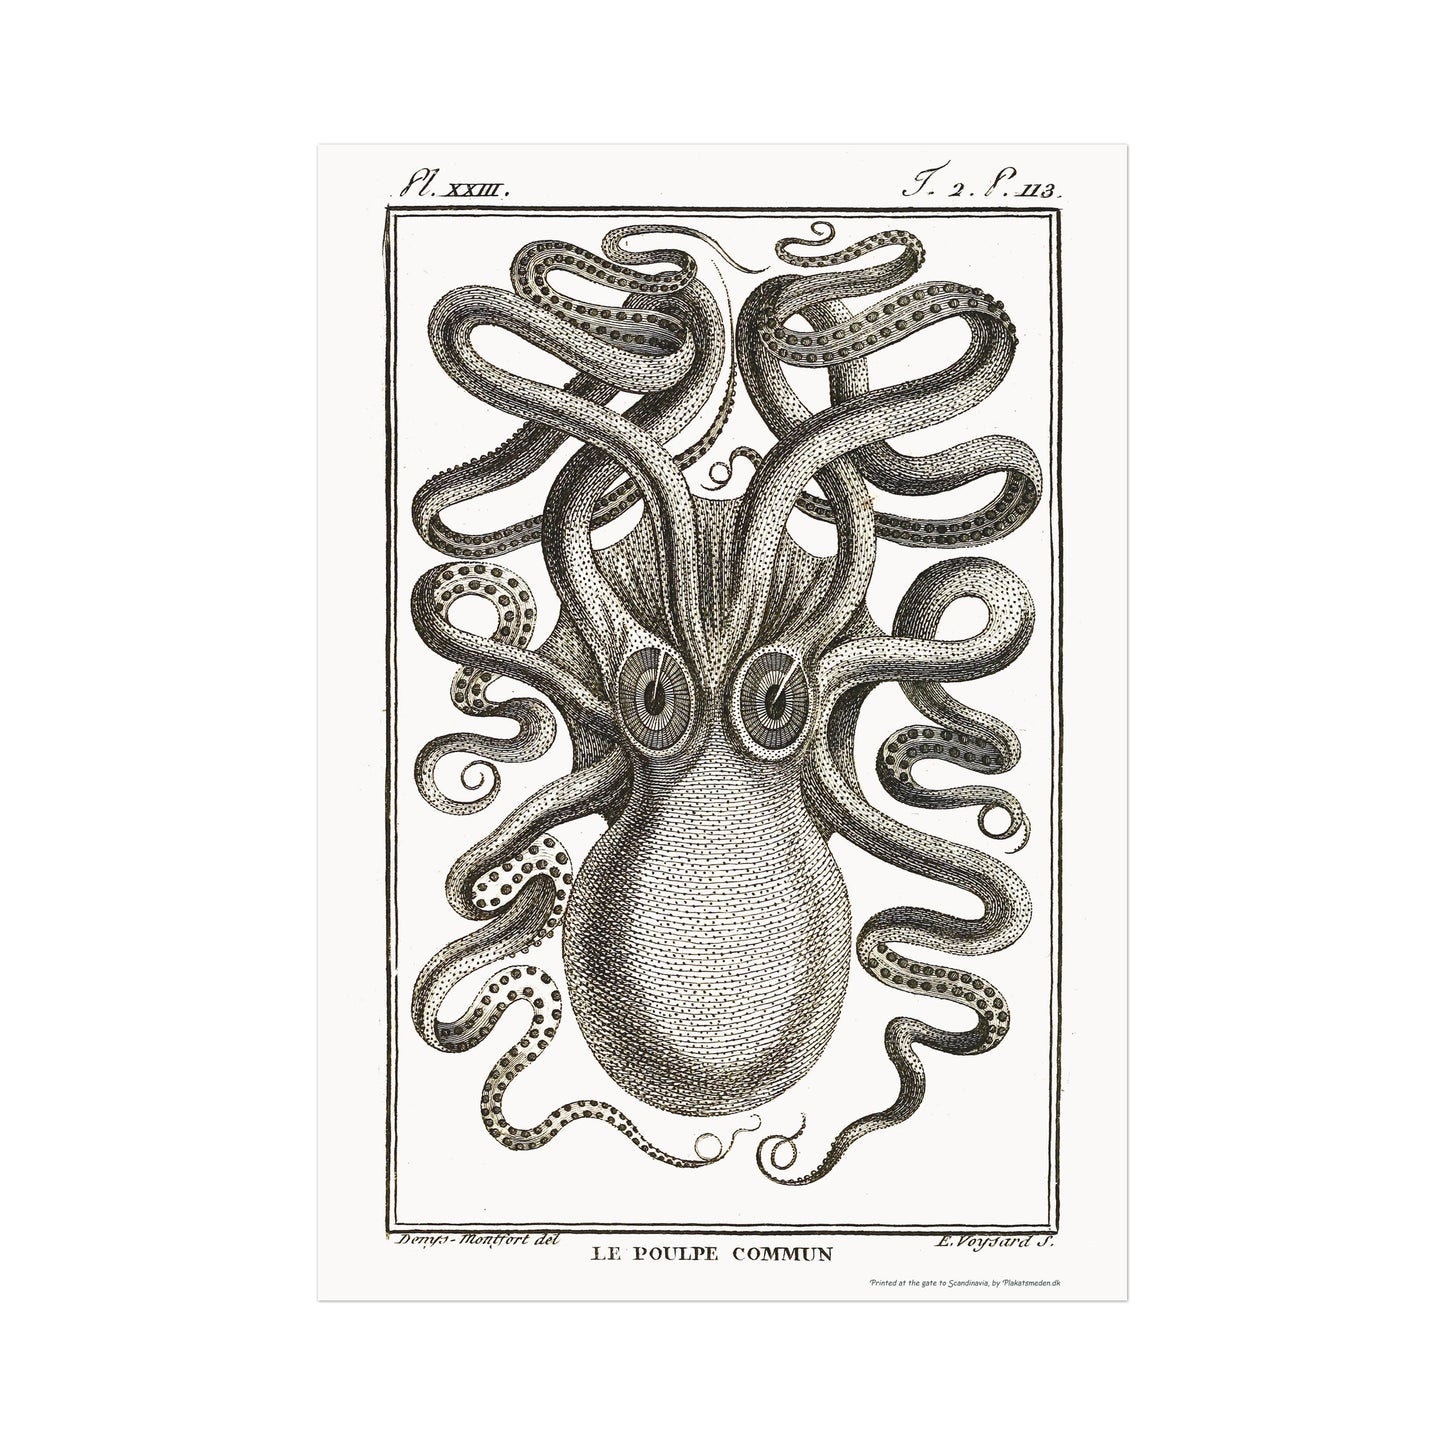 Octopus - Octopus vulgaris, 1802